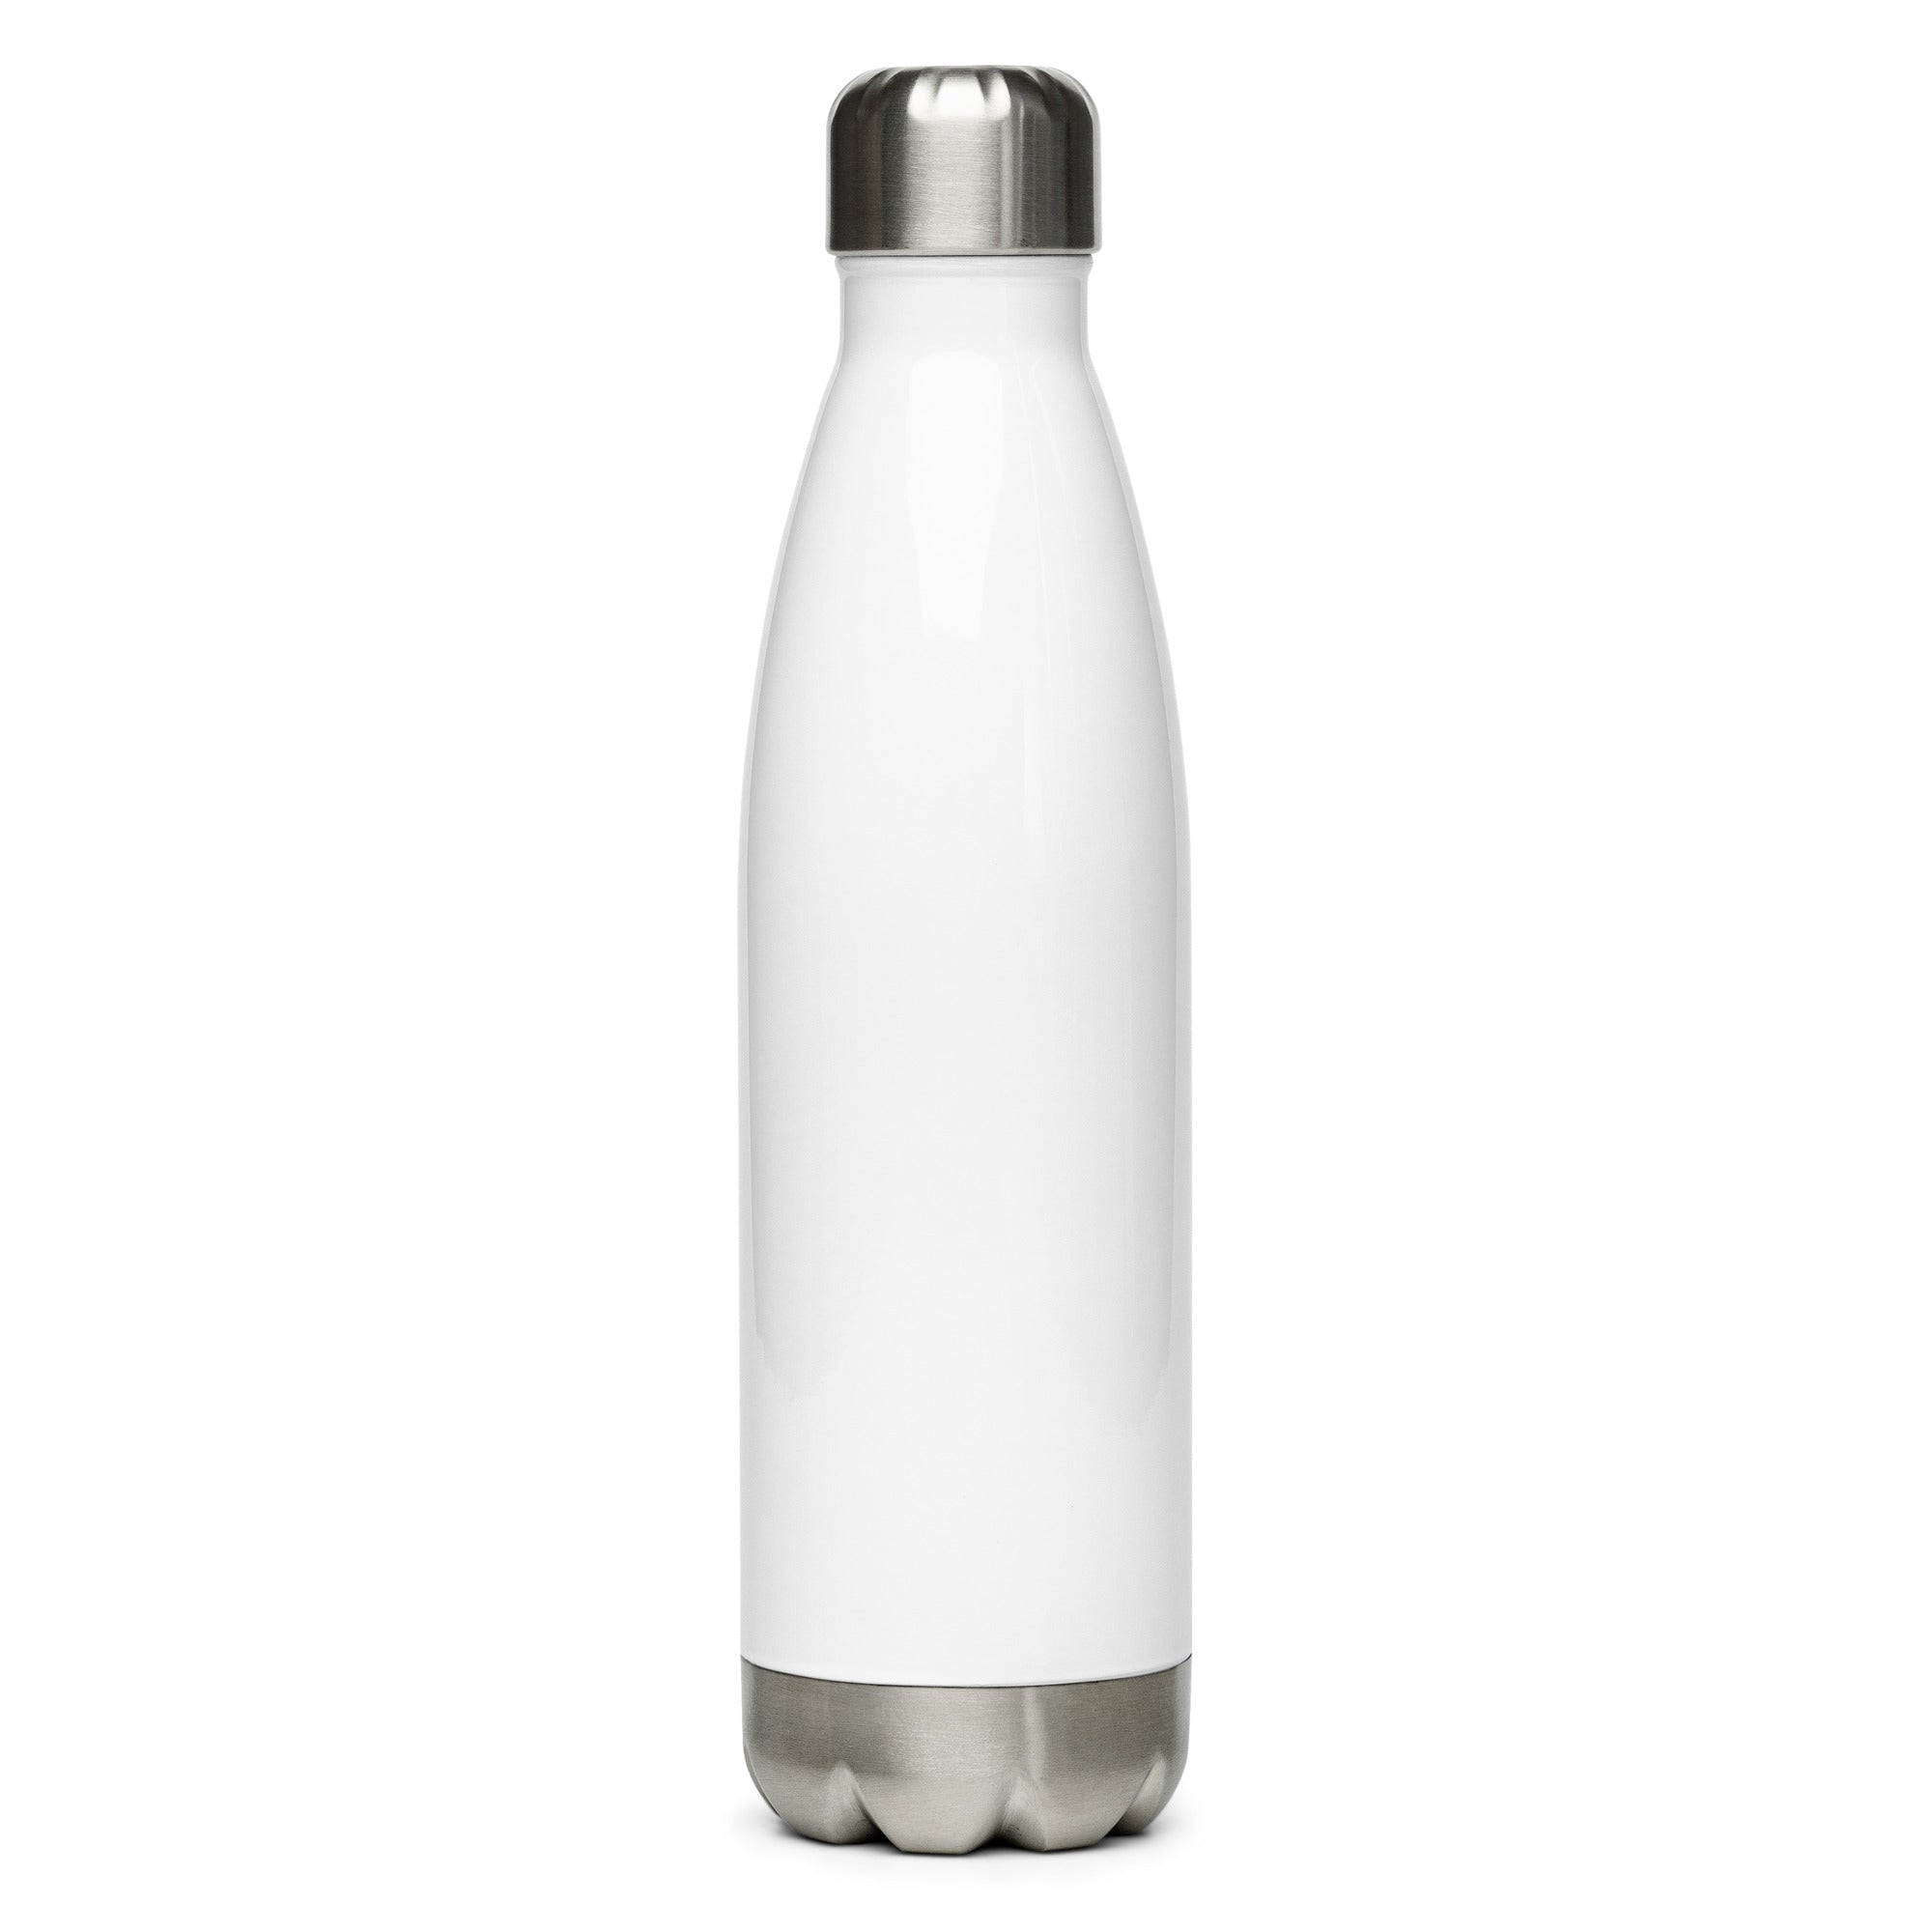 Rubber Worker Stainless steel water bottle